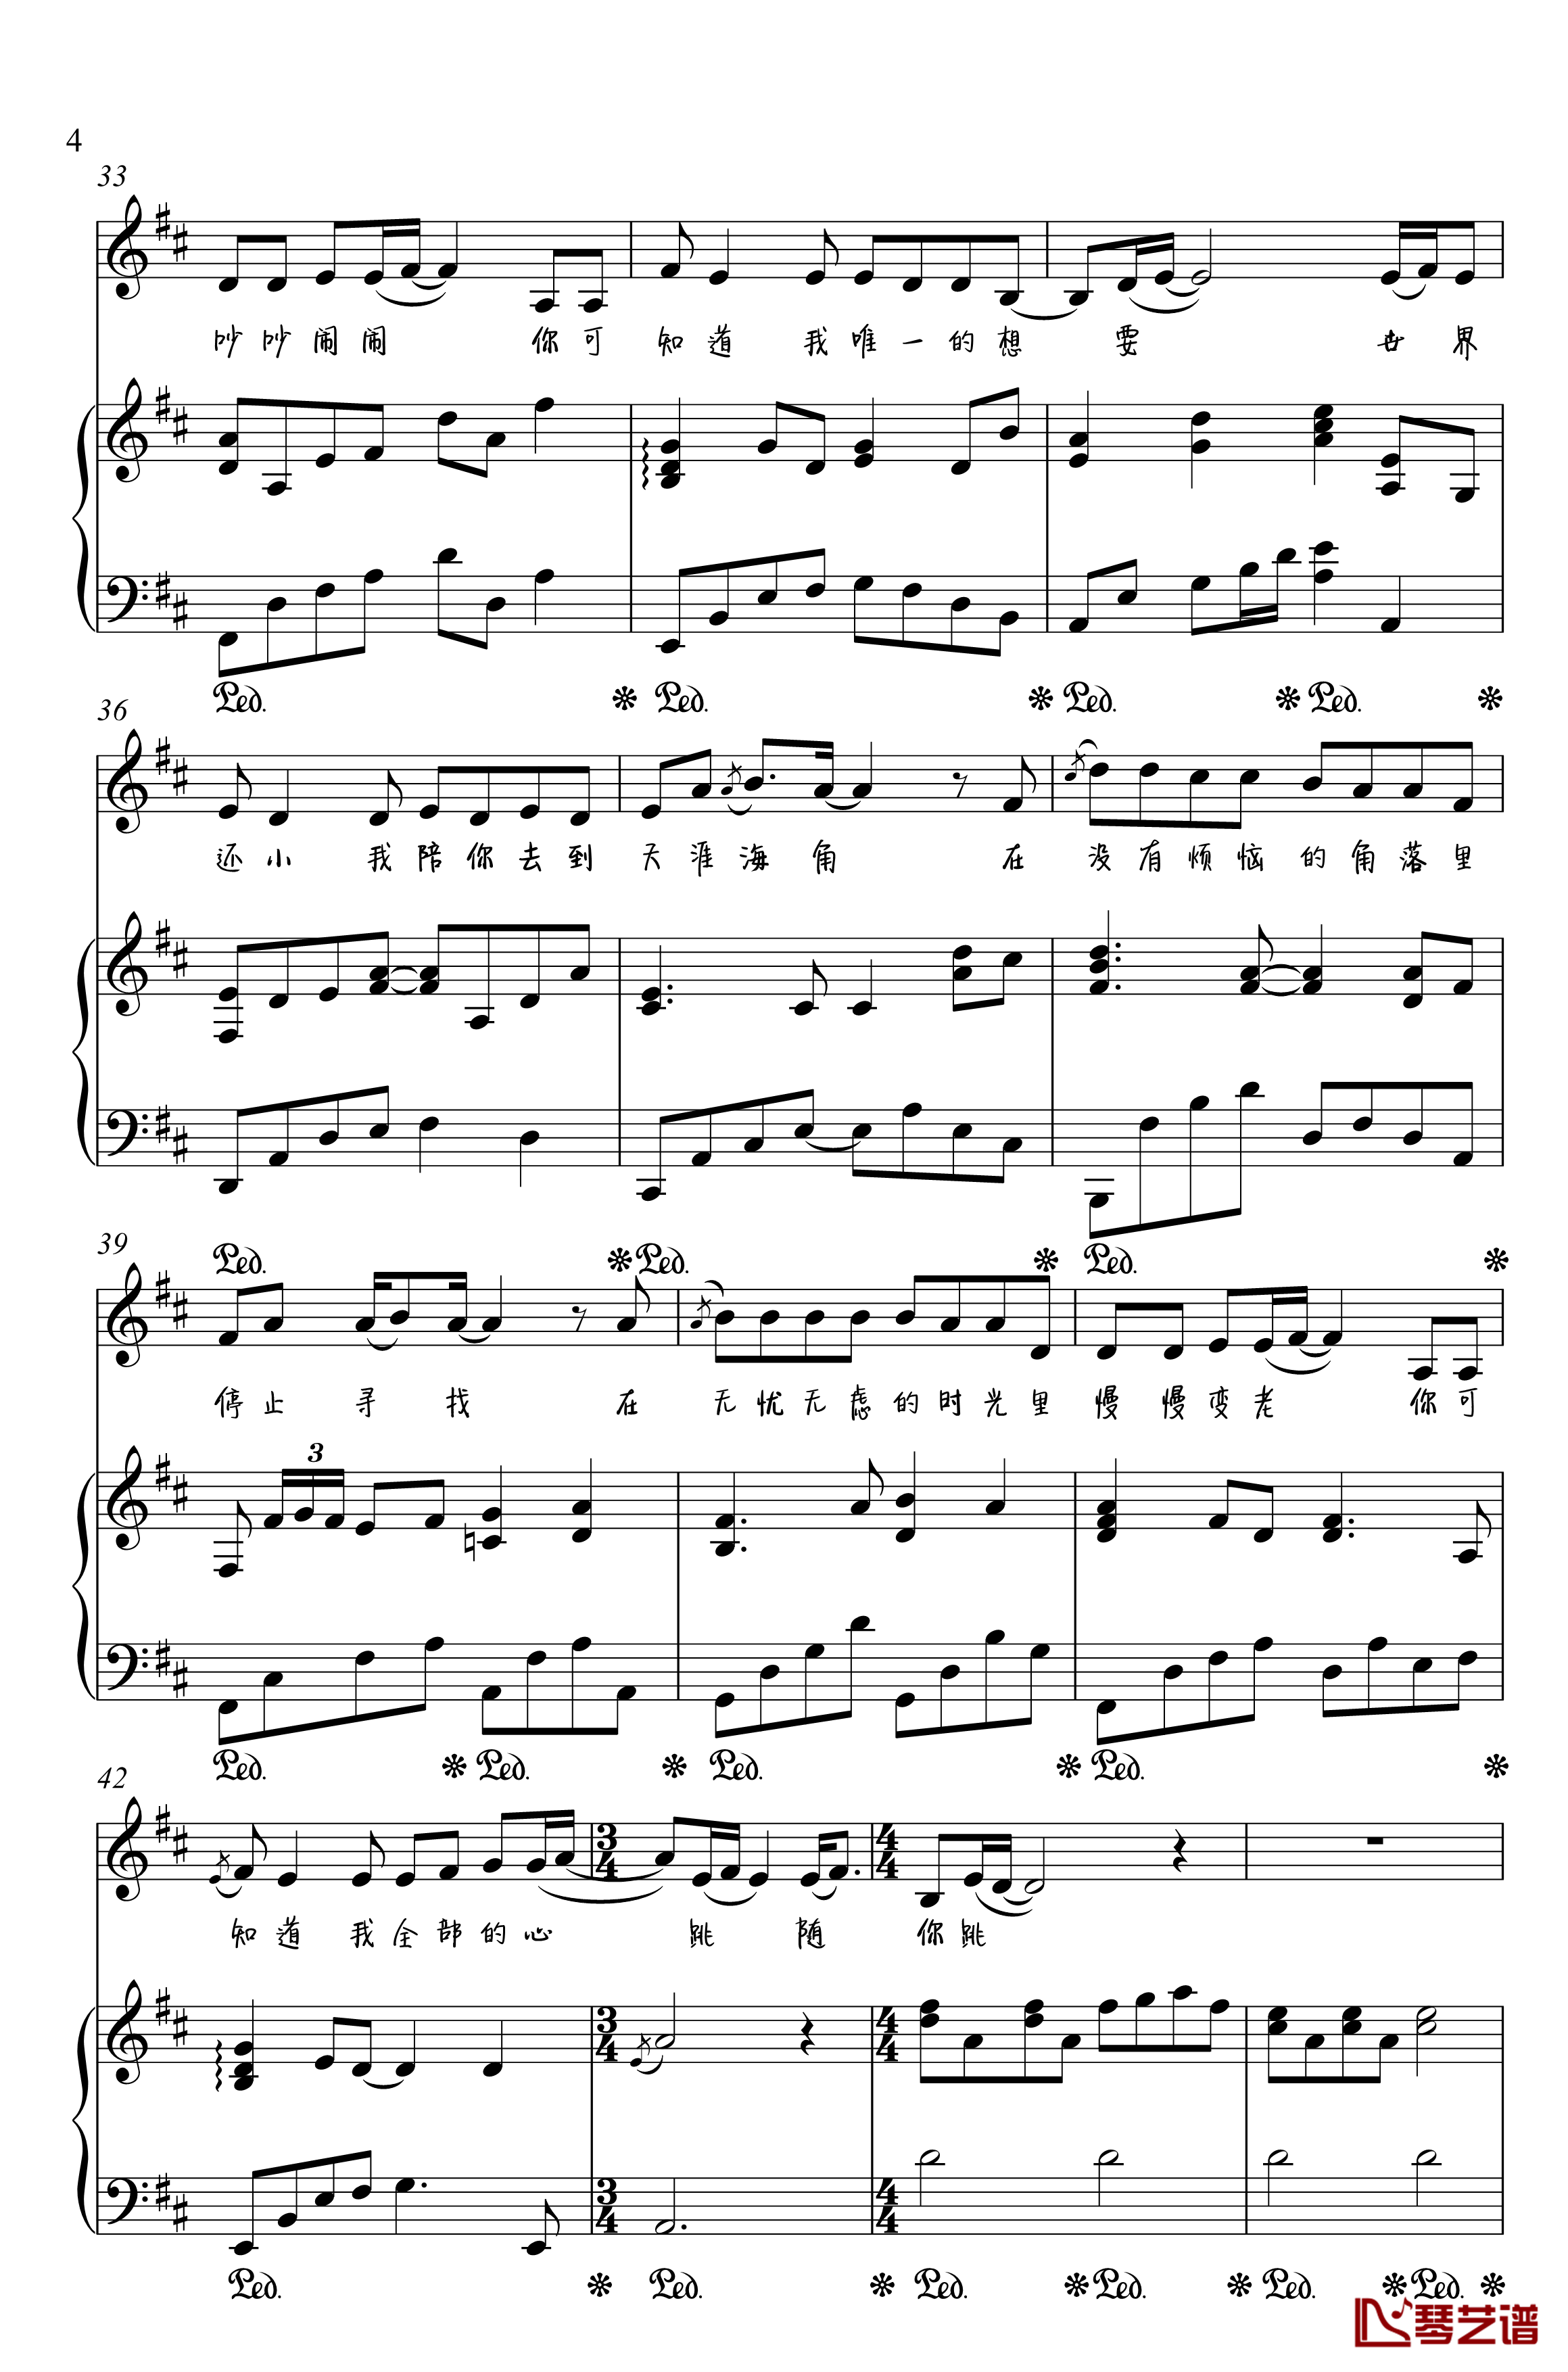 一次就好钢琴谱-金老师弹唱190125-杨宗纬